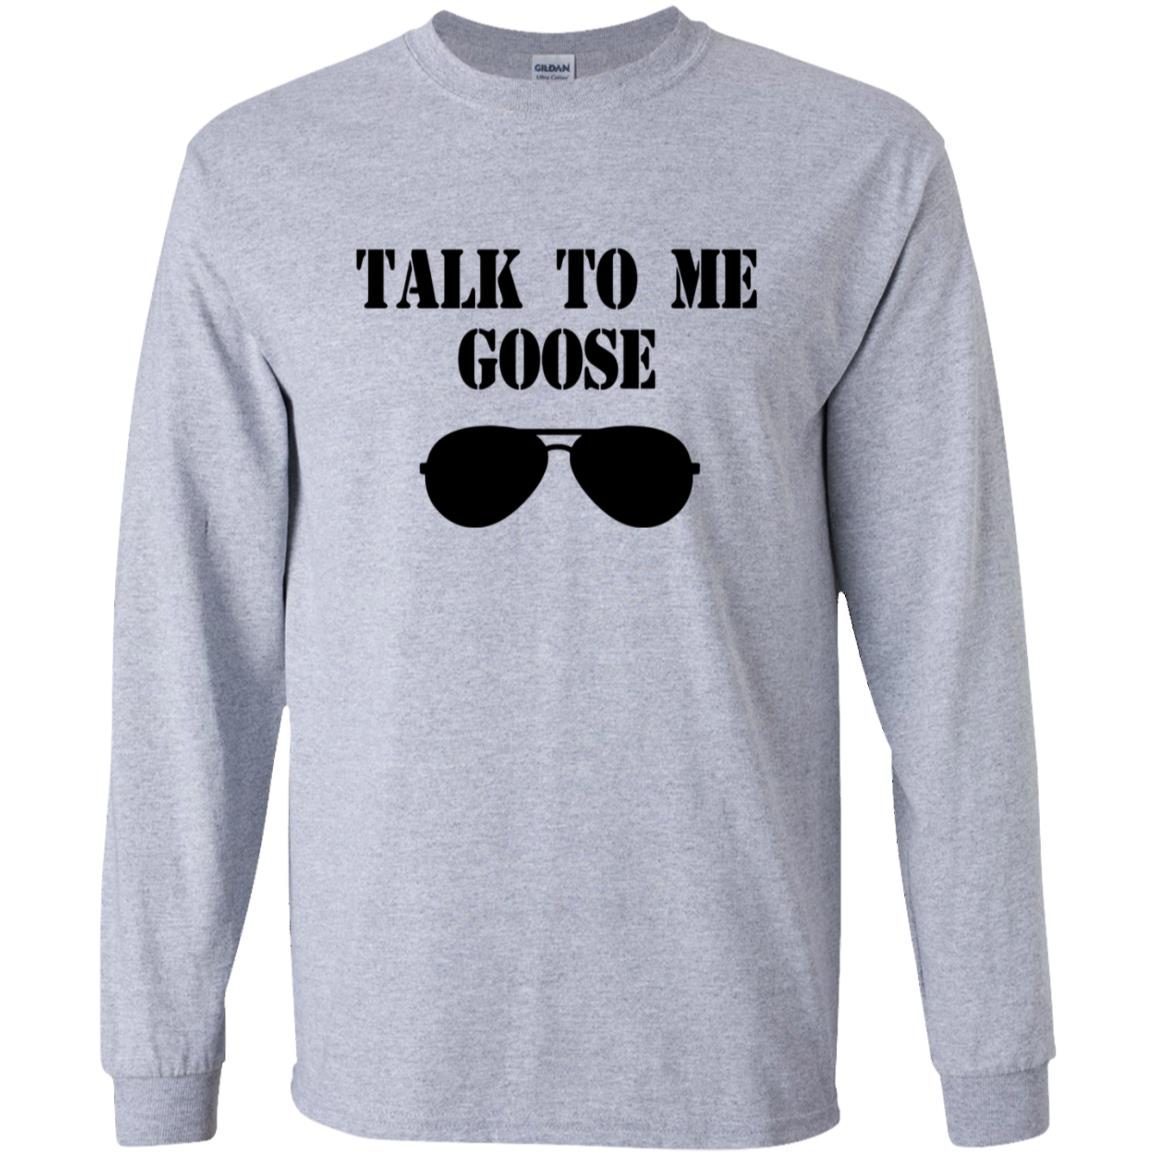 Talk To Me Goose shirt